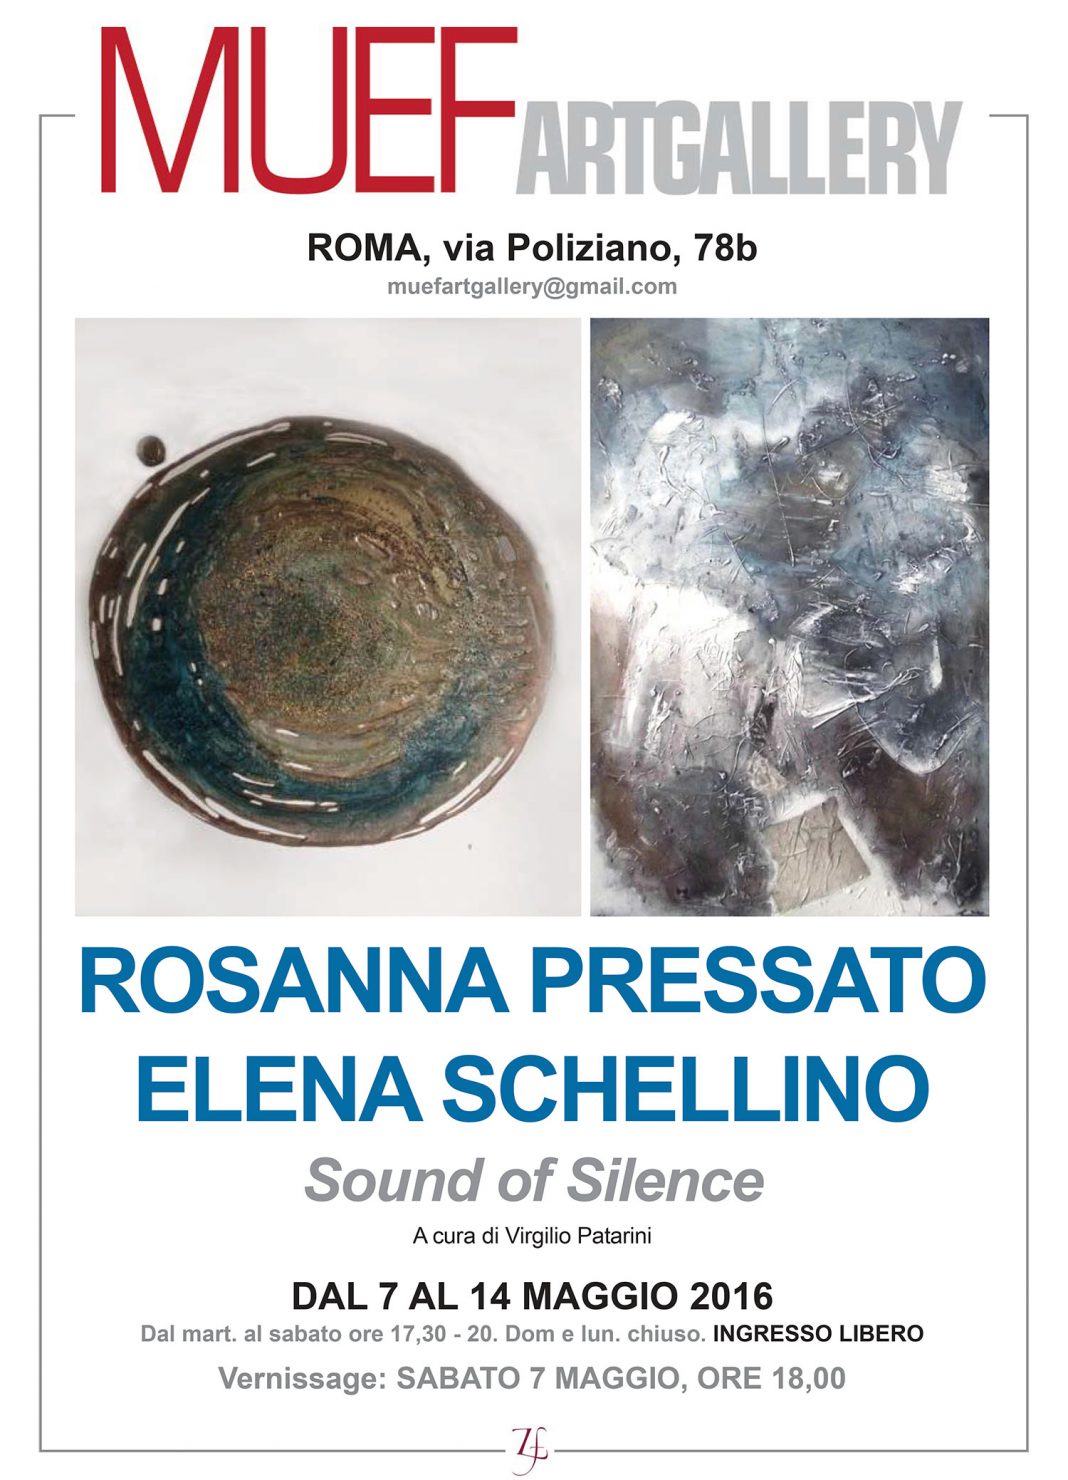 Rosanna Pressato / Elena Schellino – Sound of Silencehttps://www.exibart.com/repository/media/eventi/2016/05/rosanna-pressato-elena-schellino-8211-sound-of-silence-1068x1480.jpg